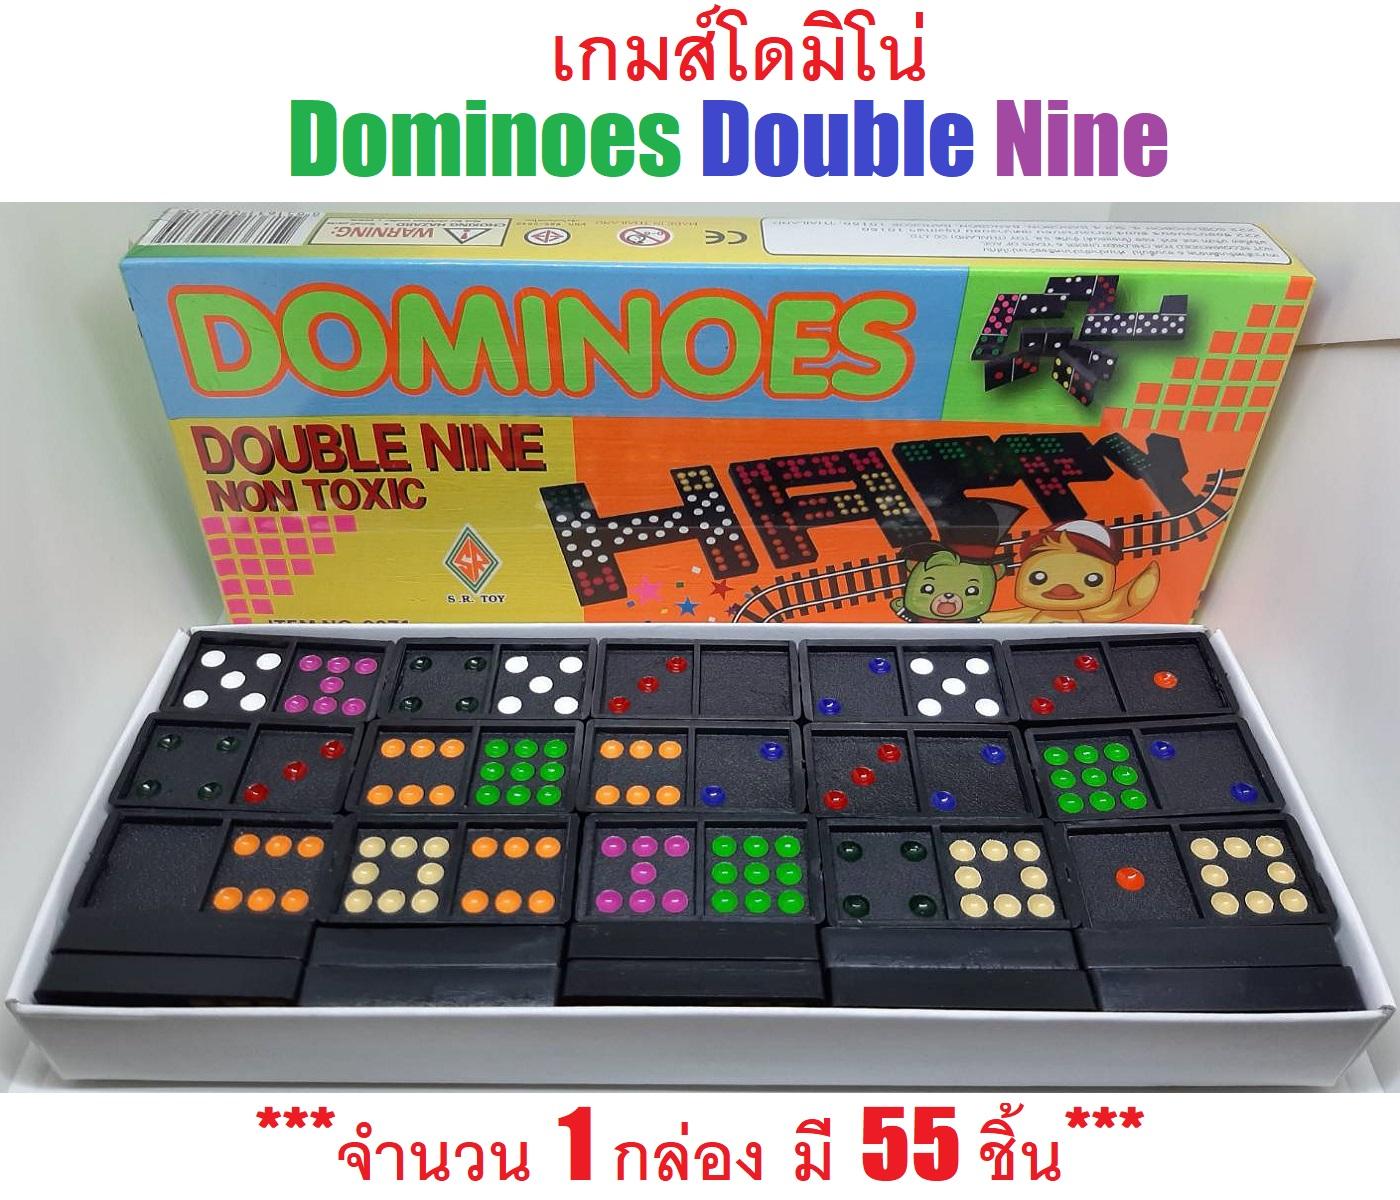 Wphuth เกมส์ โดมิโน่ Dominoes Double Nine มี 55 ชิ้น ของเล่นสำหรับเสริมพัฒนาการเด็ก ลายลูกไก่ จำนวน 1 กล่อง